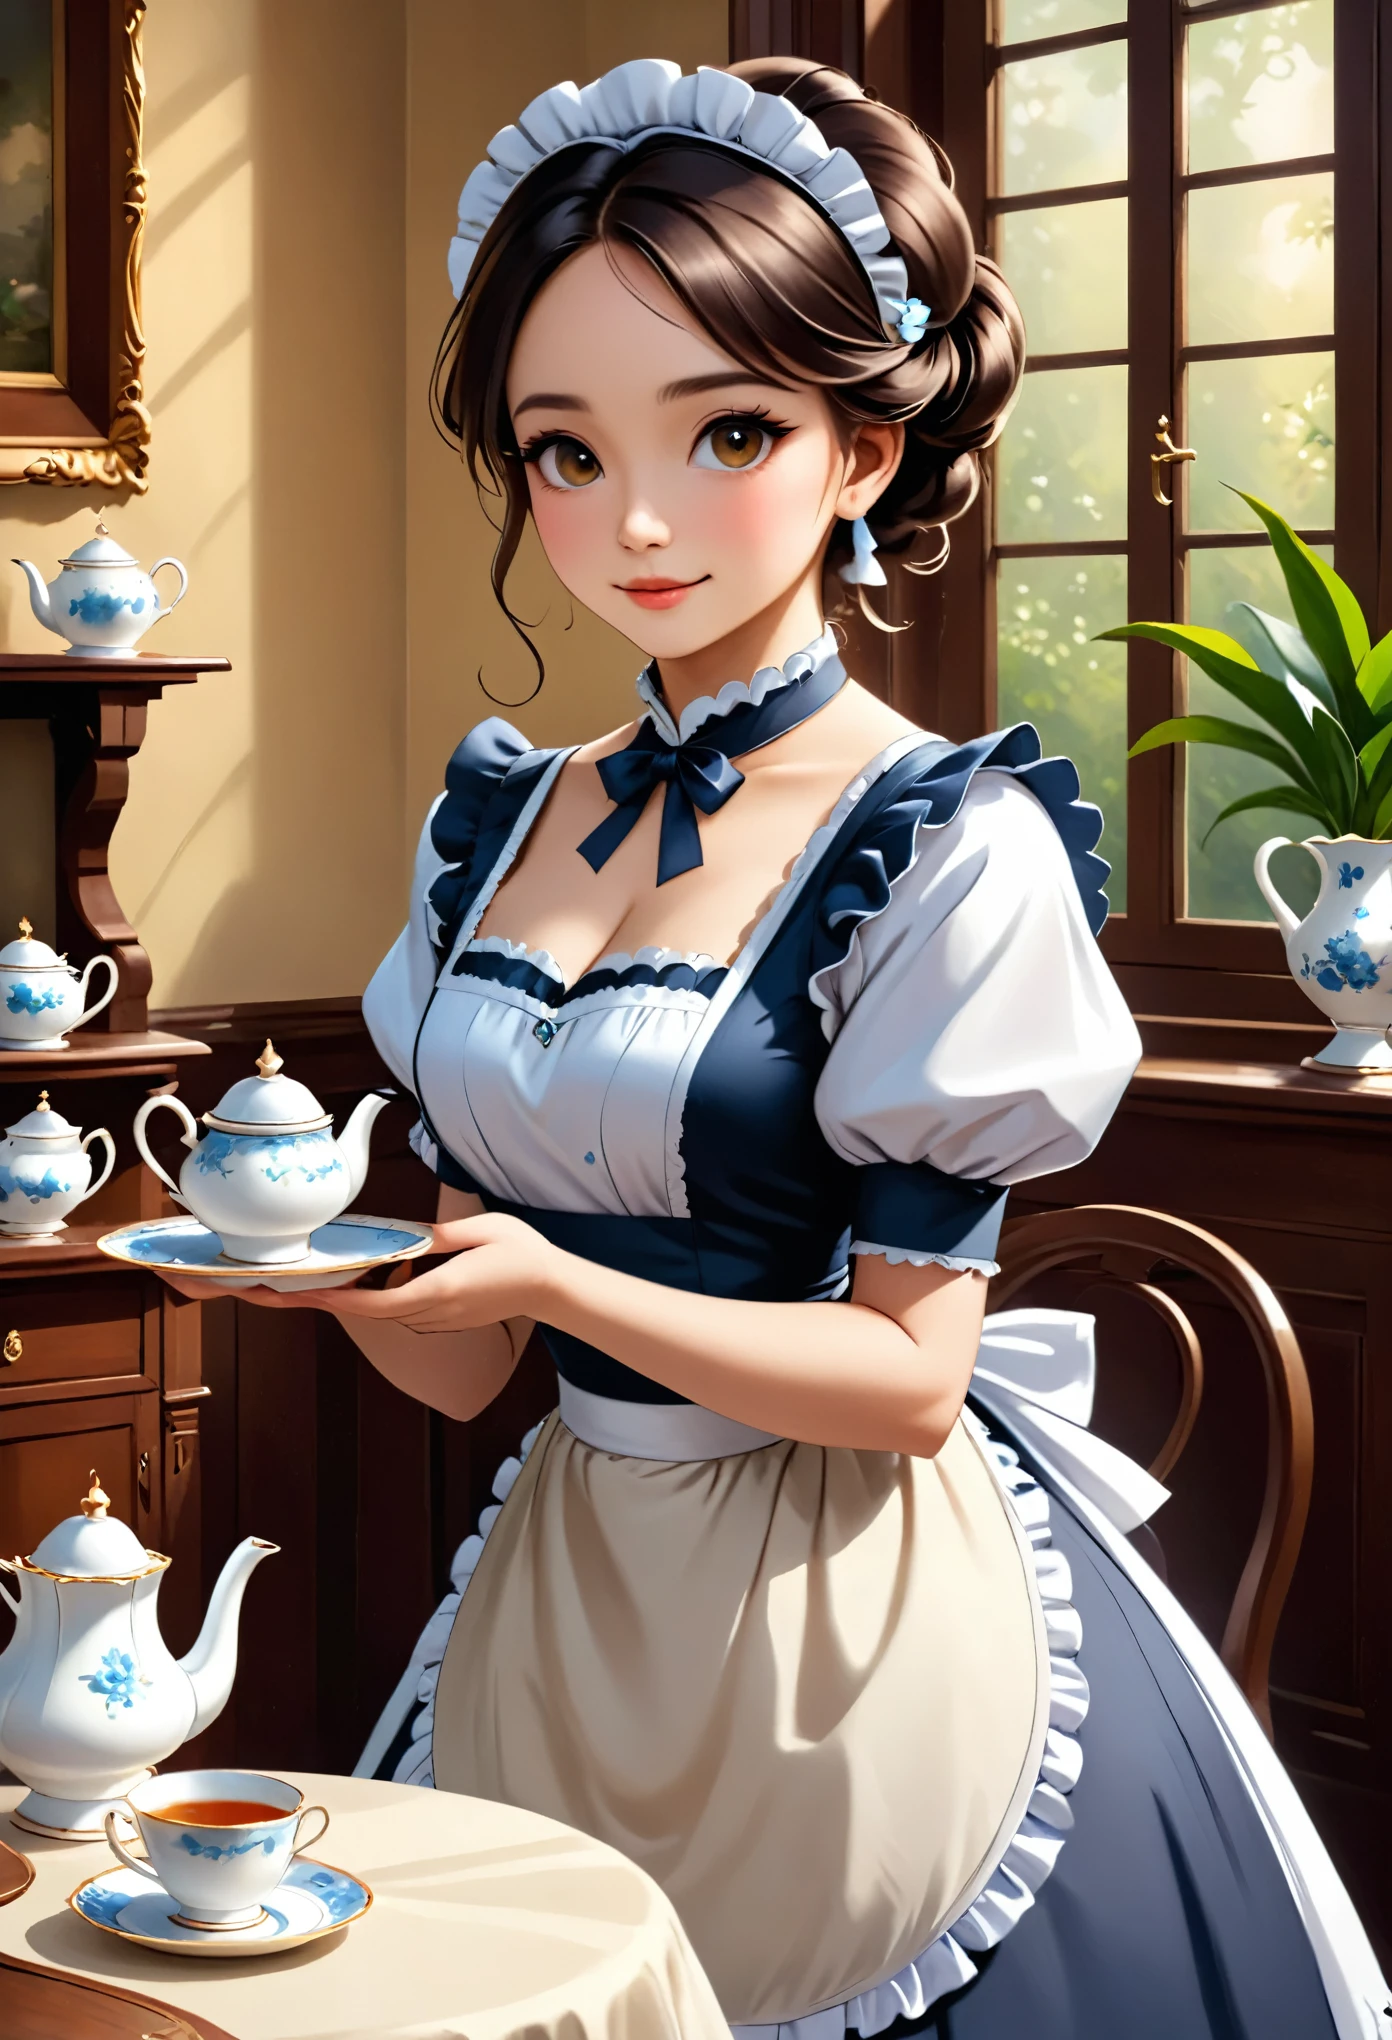 浪漫主义风格、维多利亚风格的室内，一位优雅的女仆拿着茶具的形象。柔和的光线穿透、这里有温暖而轻松的氛围。